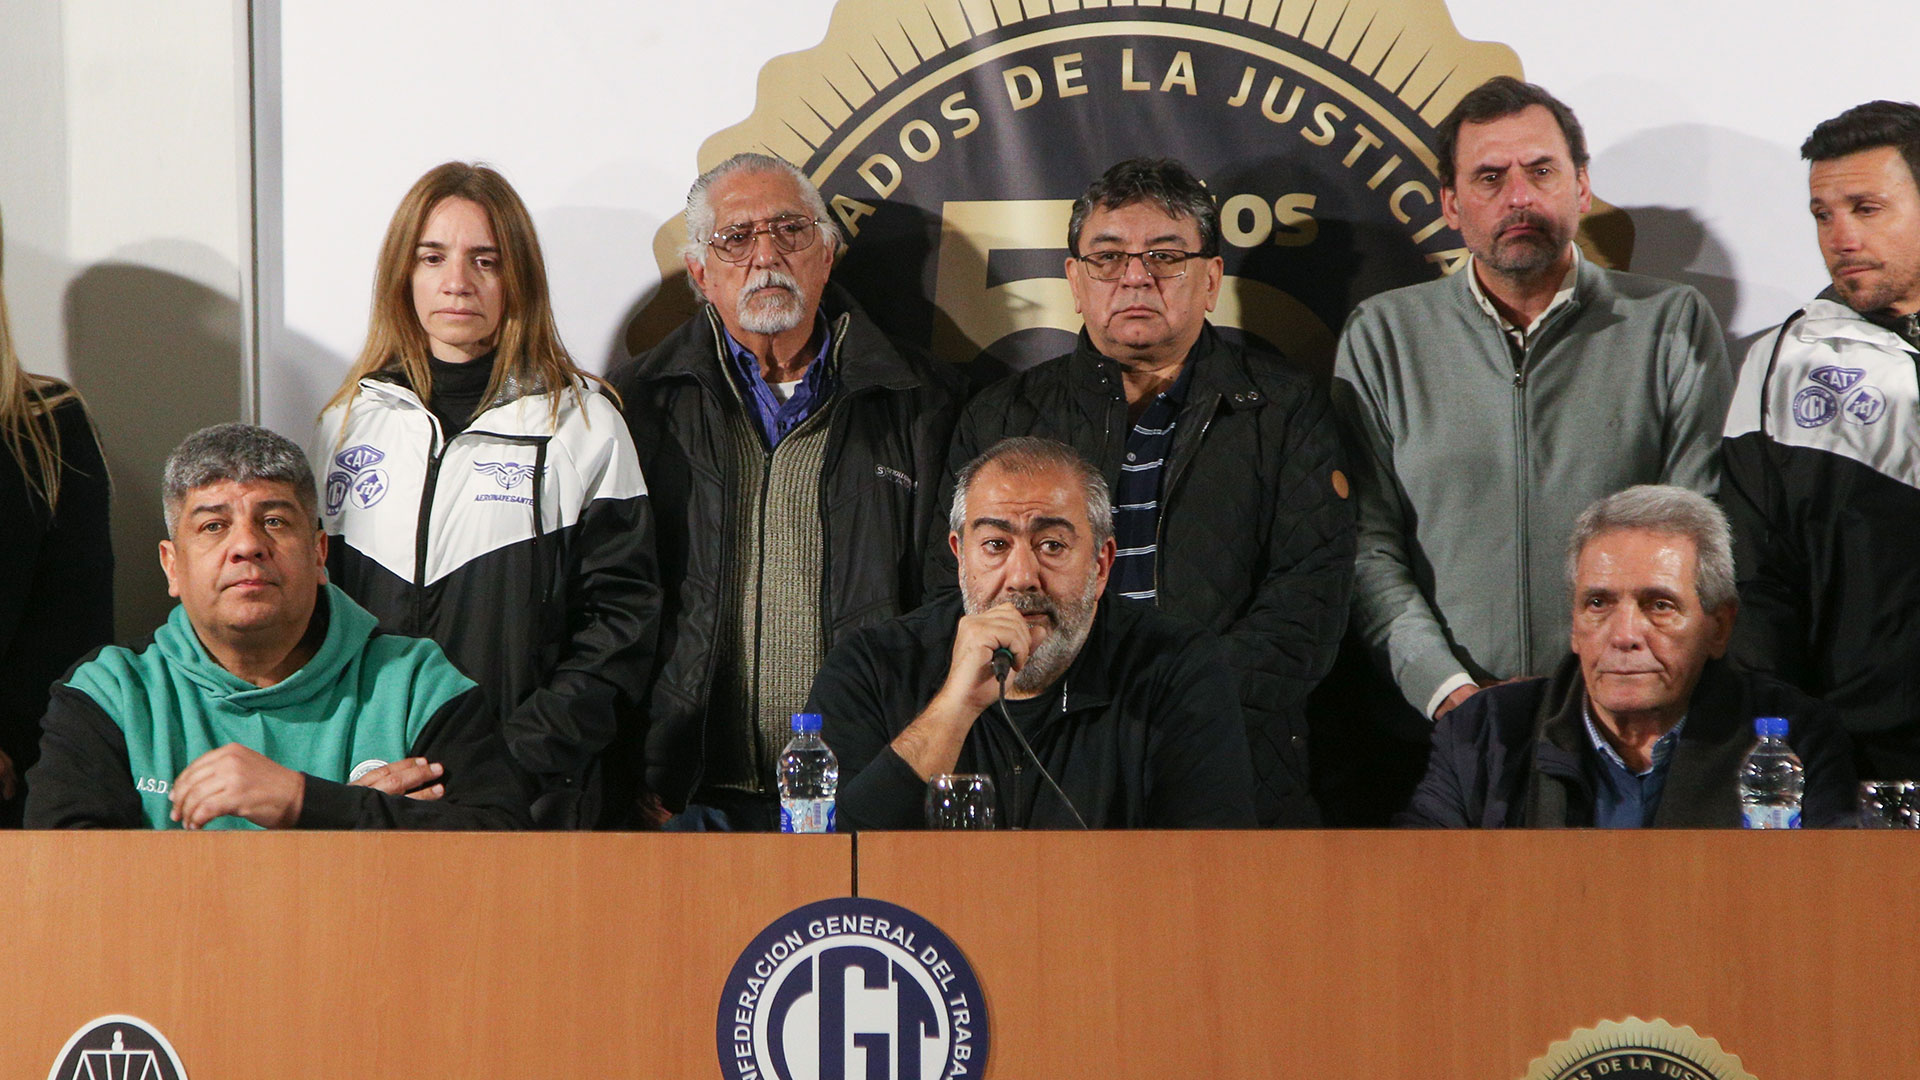 Los miembros del triunvirato de la CGT, Pablo Moyano, Carlos Acuña y Héctor Daer, durante la conferencia de prensa posterior a la marcha que realizaron al Congreso